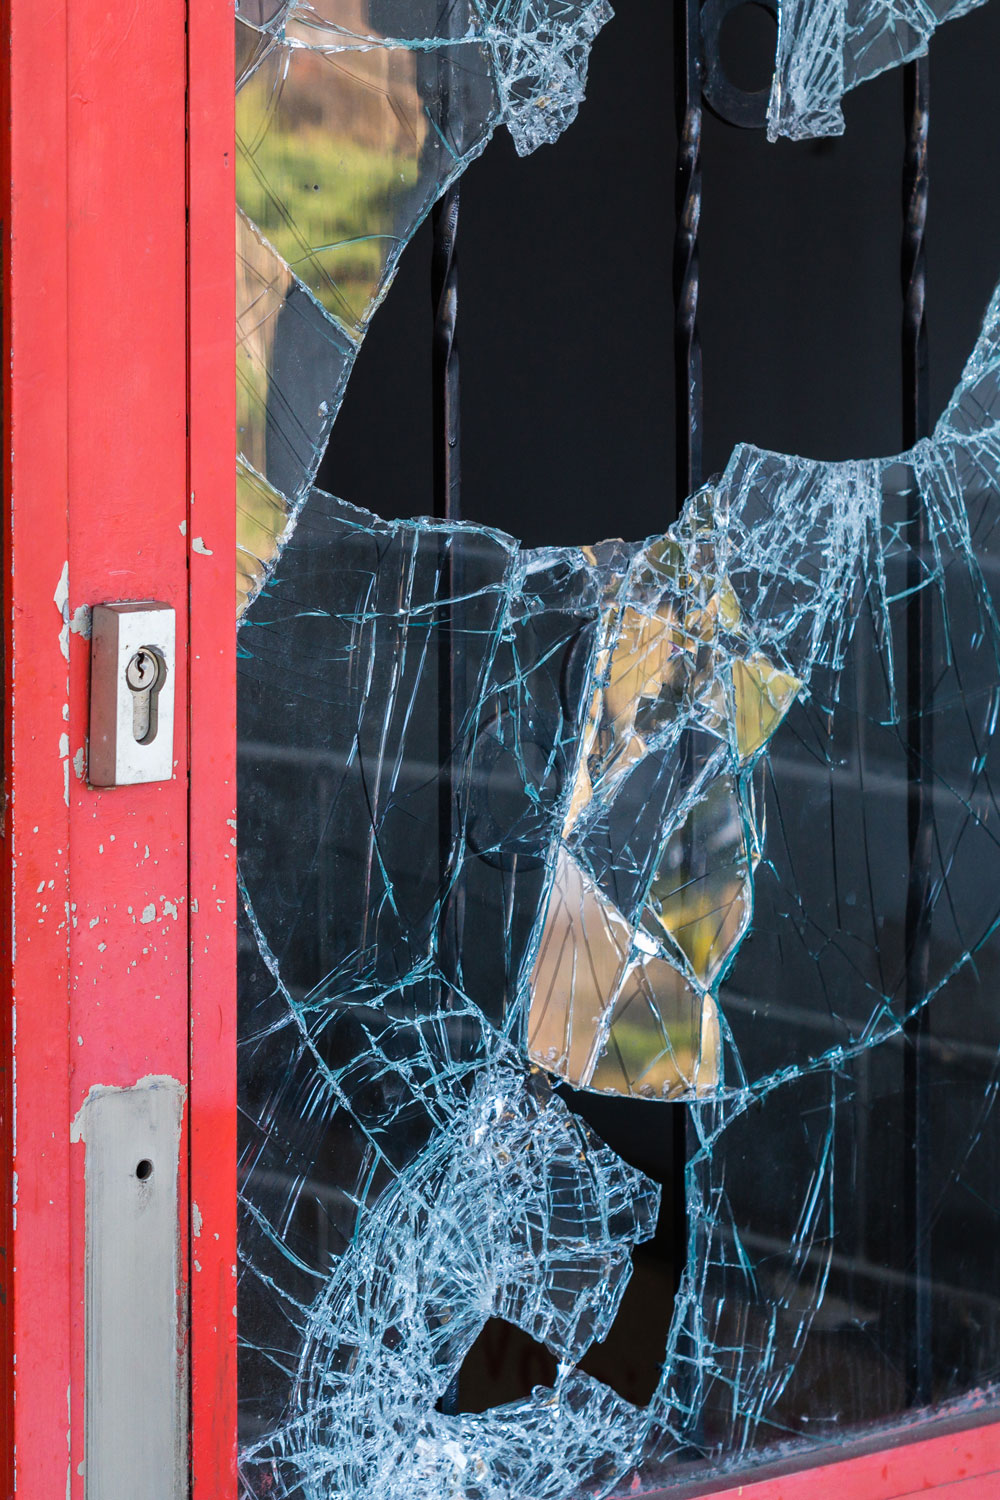 photo - Broken Windowpane and Red Doors